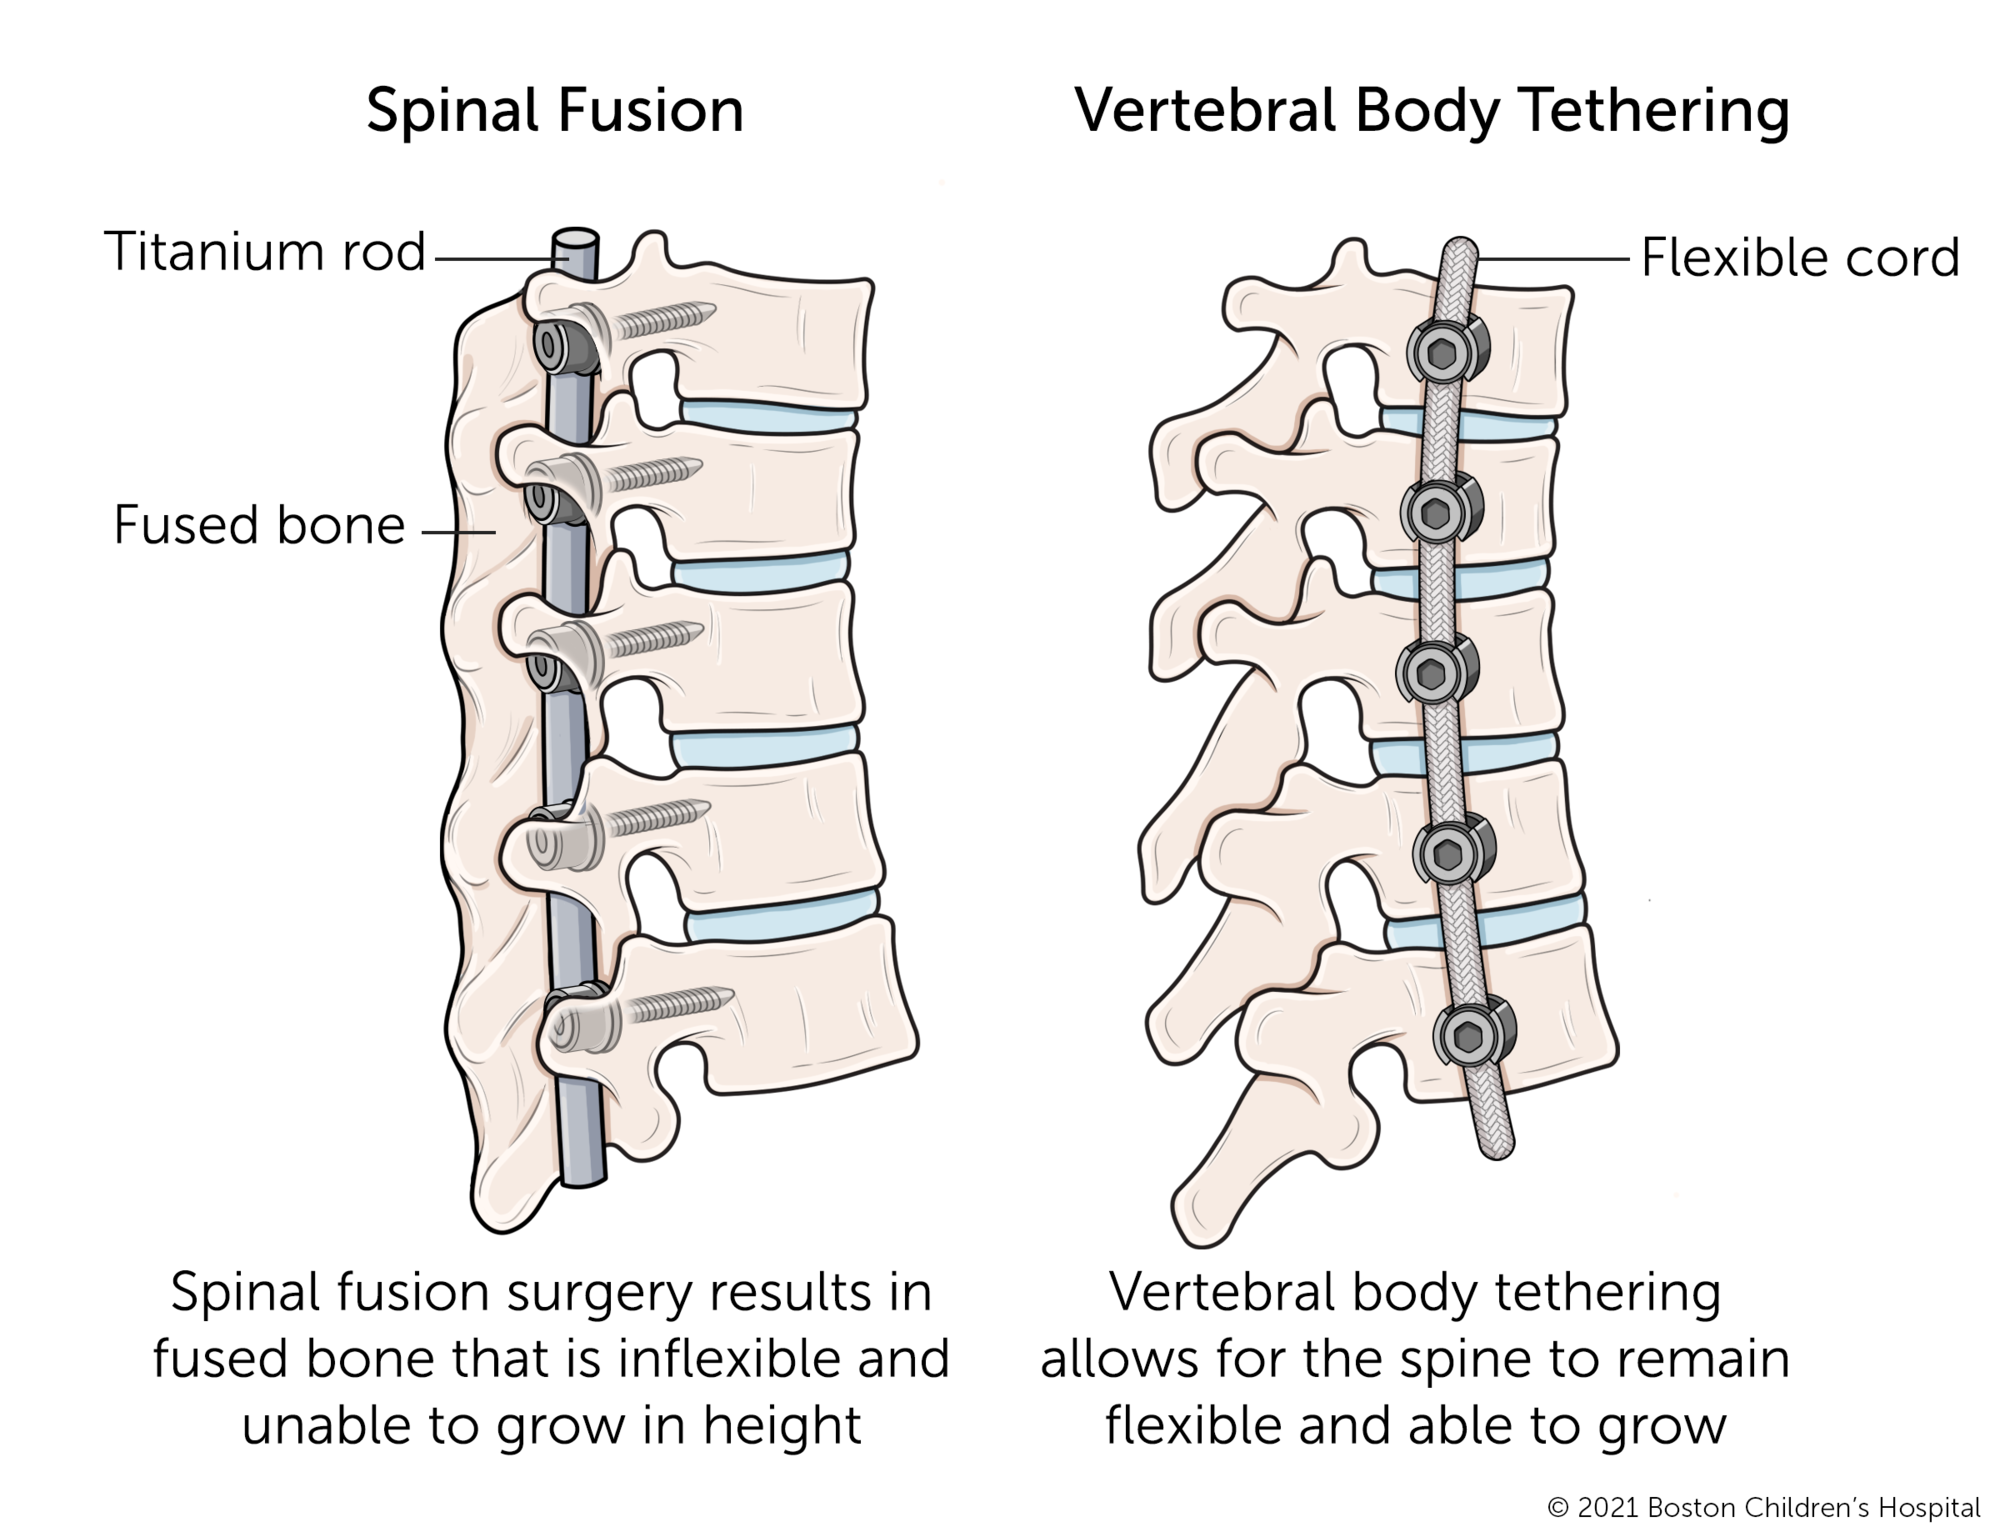 脊柱融合椎体相比拘束。脊柱融合手术导致融合骨不灵活,无法长高。脊柱椎体拘束允许保持灵活和能够成长。